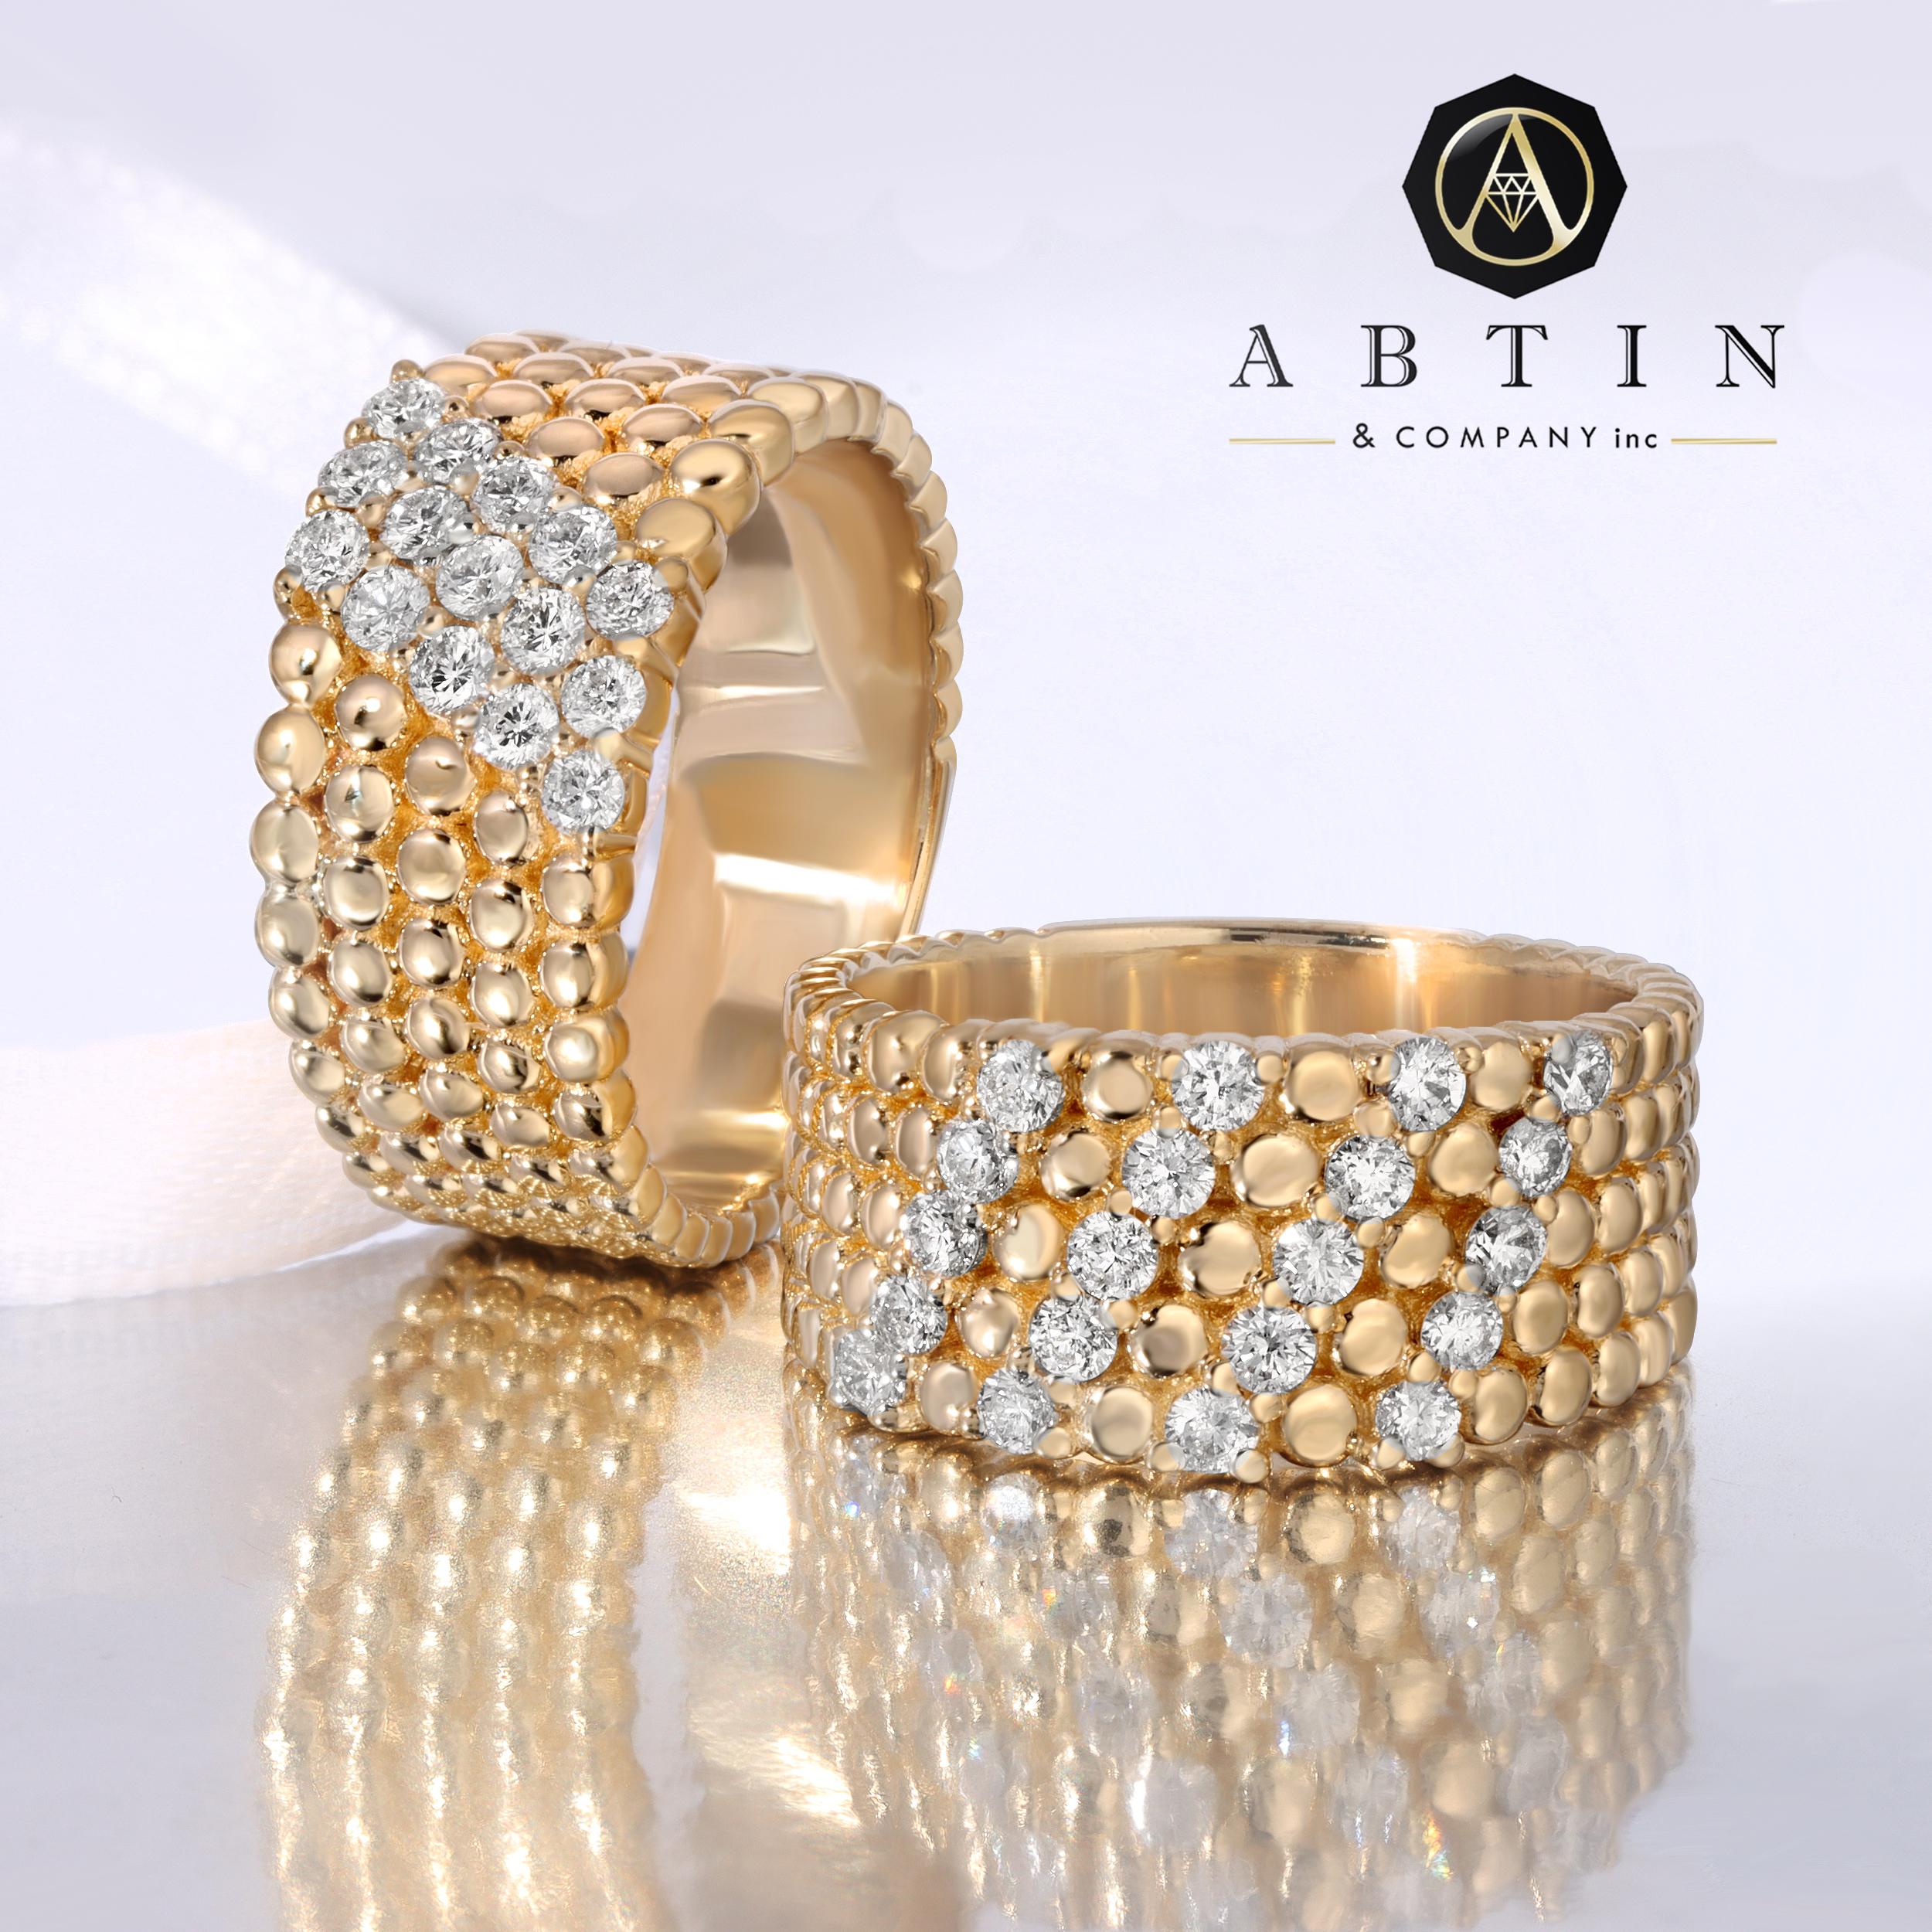 Fabriquée en or 14k, cette bague contemporaine en or jaune avec des détails perlés et des diamants est un choix idéal pour une utilisation quotidienne. Les trois rangées de diamants ronds sertis dans les anneaux perlés ajoutent une touche de